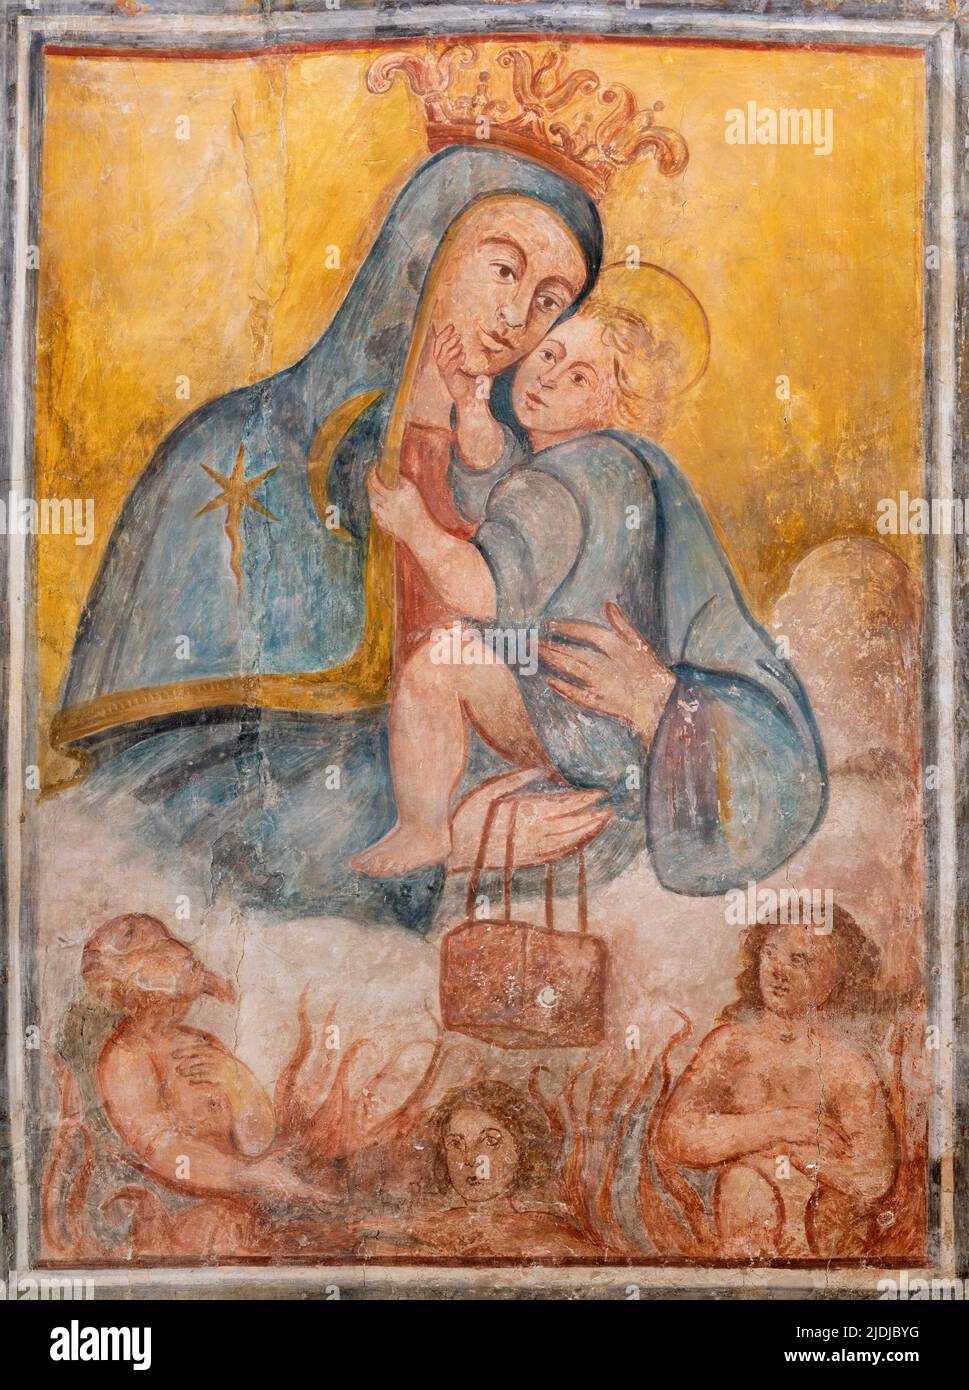 MIERA, ITALIEN - 8. MÄRZ 2022: Das Fresko der Madonna in der Kirche Chiesa di San Pietro Caveoso von einem unbekannten Künstler aus dem 15. Jh. Stockfoto